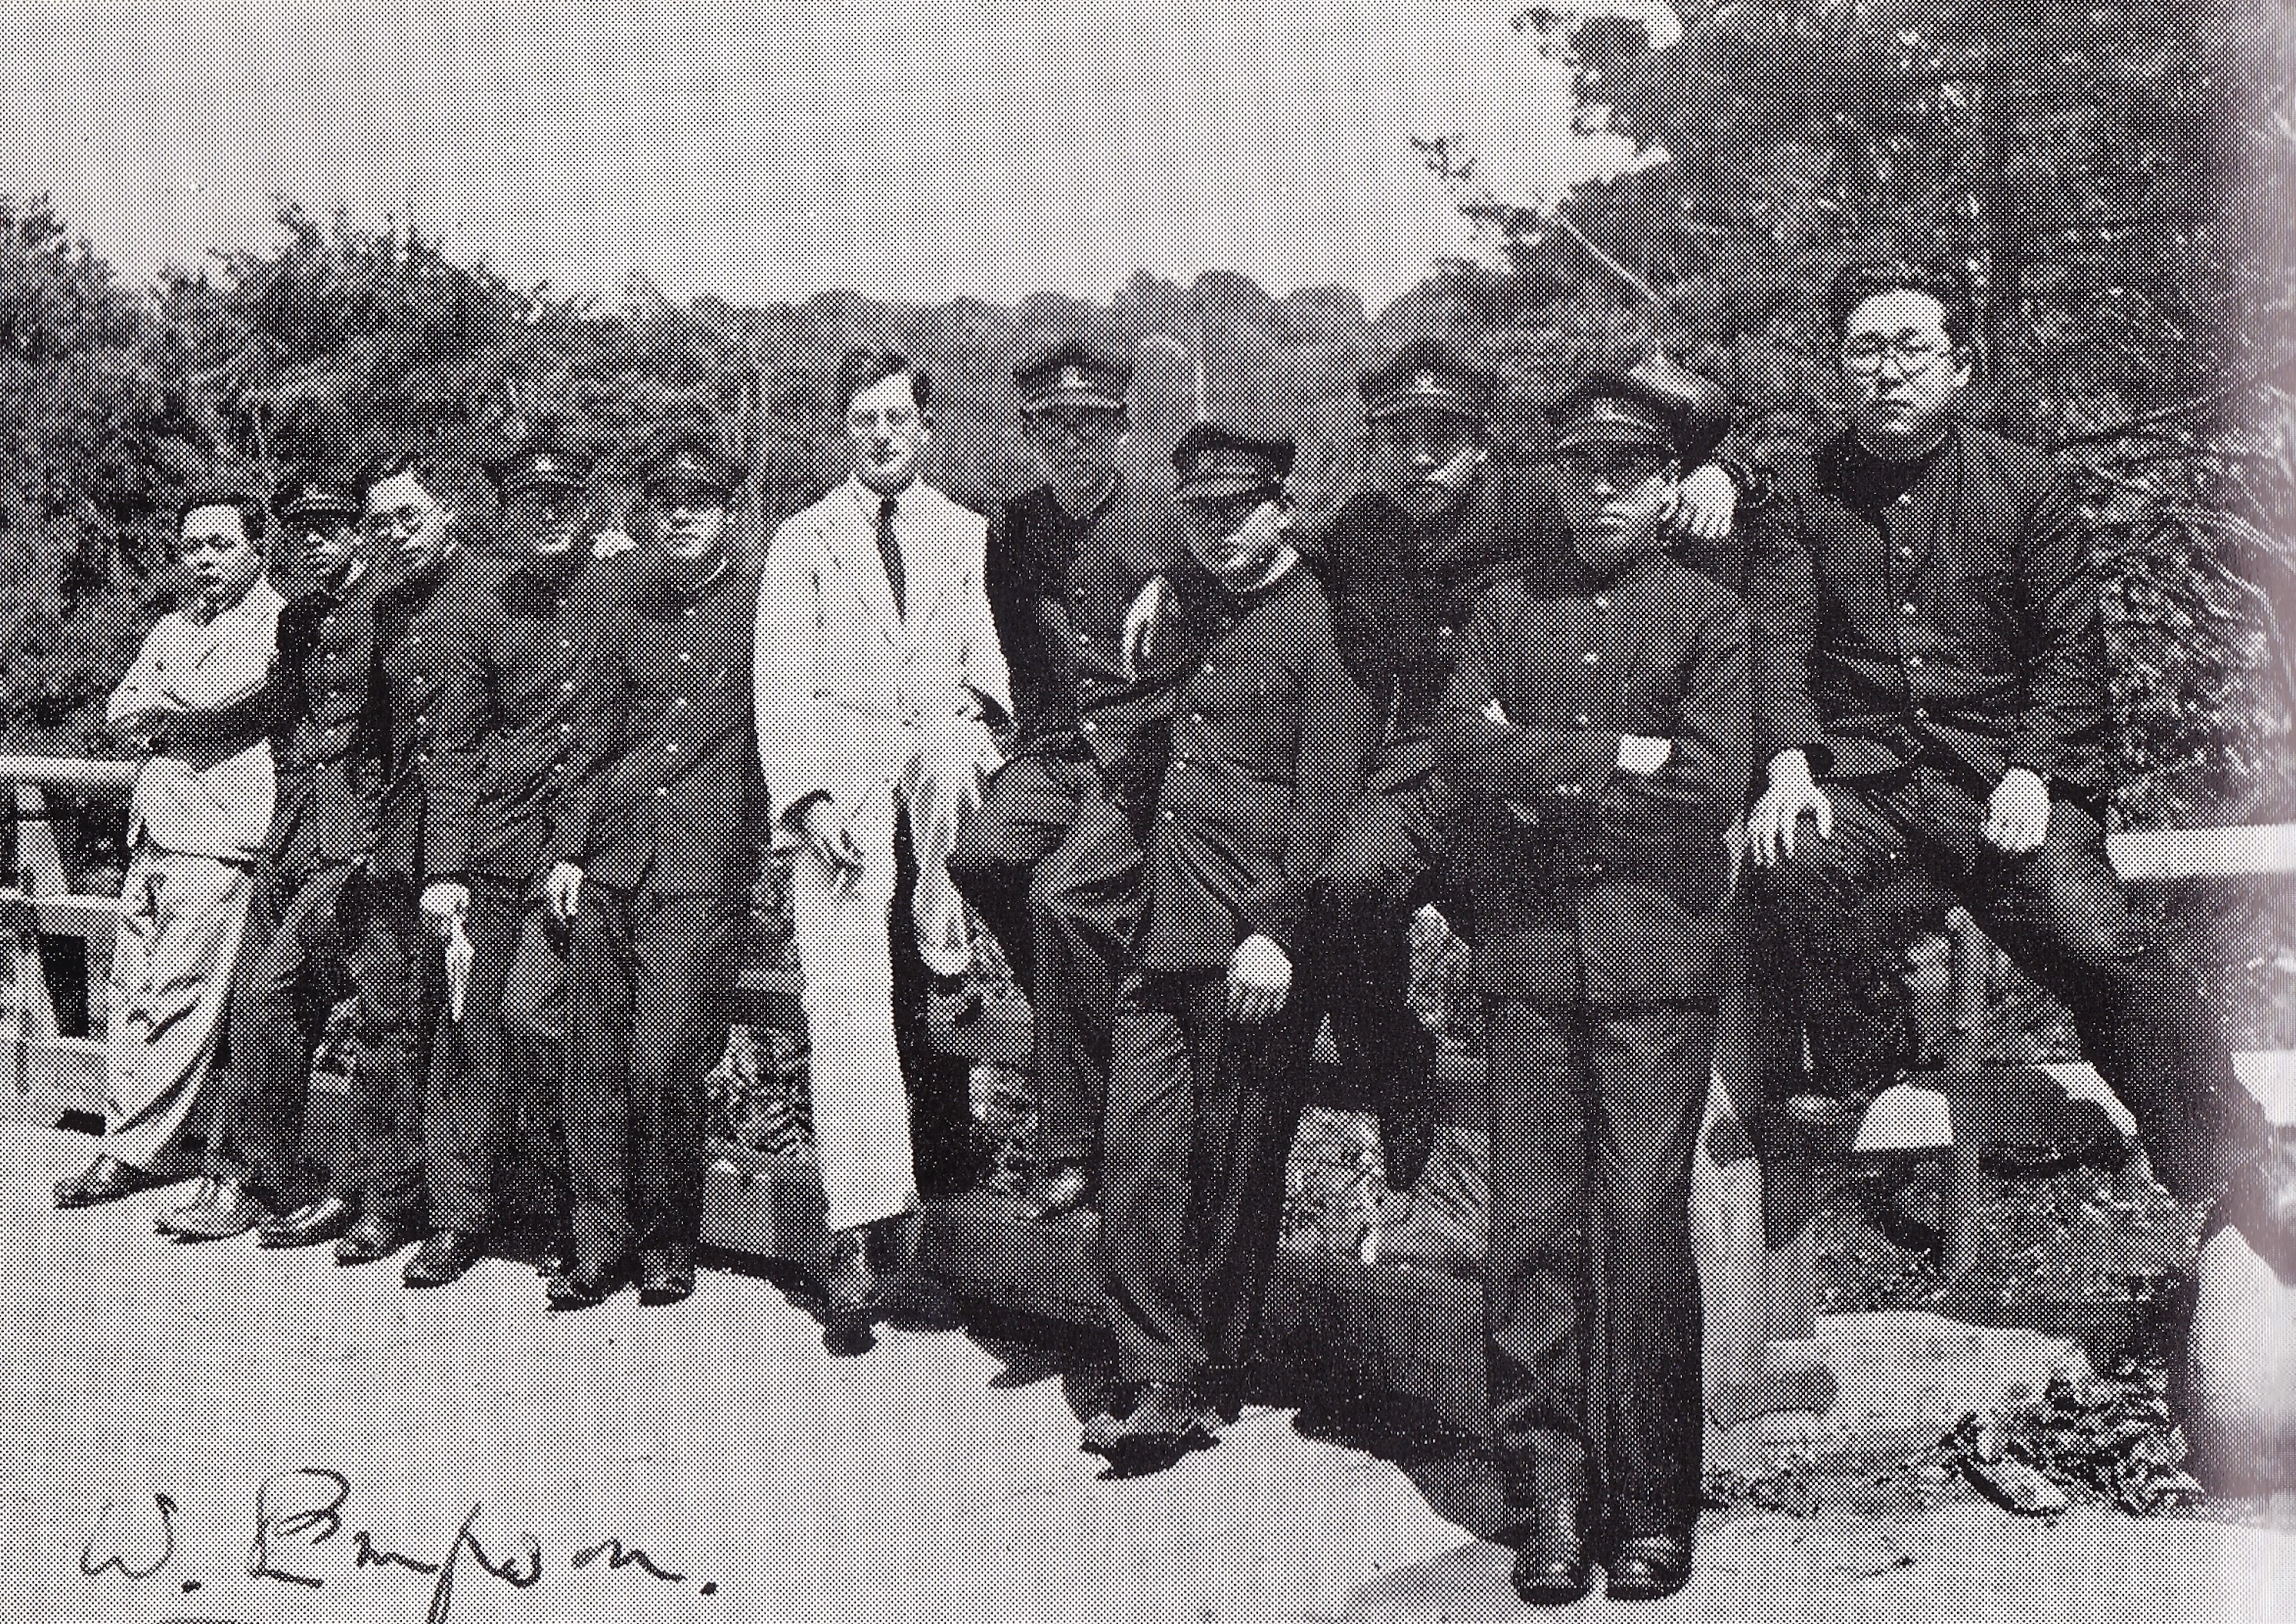 写真で提示しているのは、およそ1932年にウィリアム・エムプソンと東京文理大学の学生である。撮影した場所は、嘗て文理大学の敷地内にある、東京都文京区の泉州園（占春園）という庭園である。エンプソンの同僚且つ友人の福原林太郎は左端。研究社の許可を得て、福原氏の選集『英文学評論』 / 『福原麟太郎著作集』 10（東京：研究社、1969）よりここで画像させて頂き、感謝を申し上げたい。（画像はイーウィック・デーッヴィッド/武田香乃より）